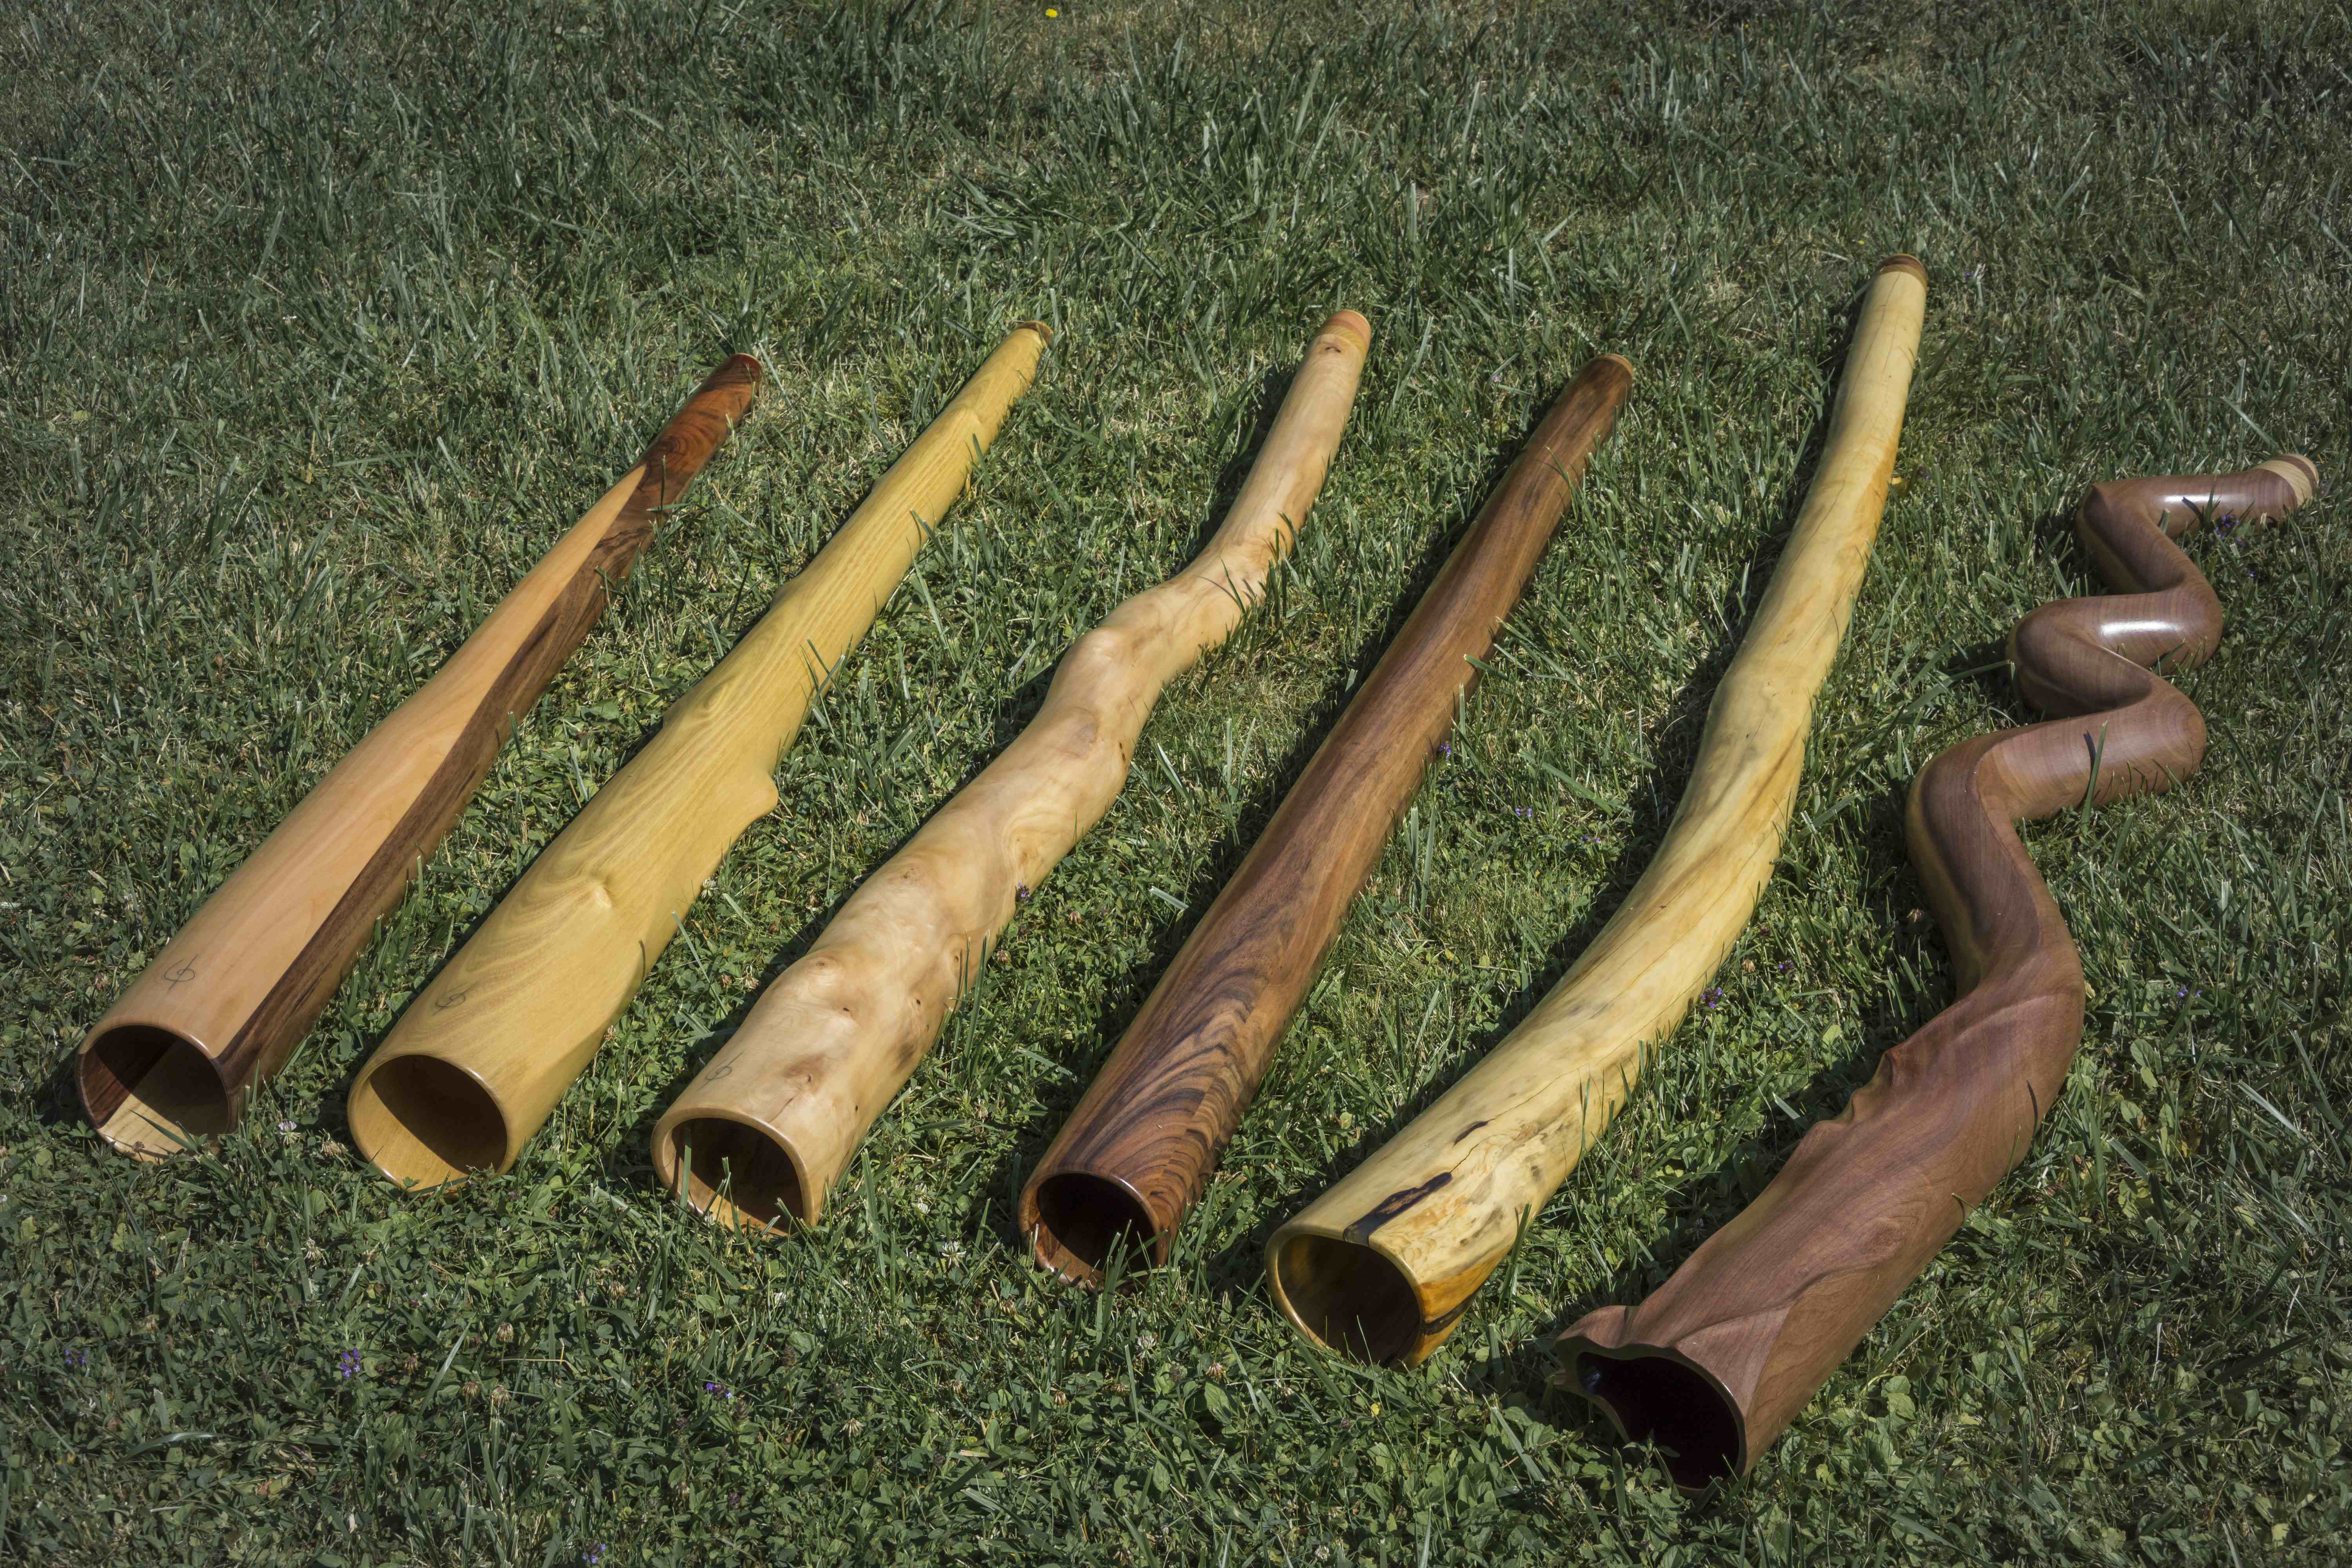 Nouveaux didgeridoos disponibles fin juin 2019. Cinq instruments d'essence diverses allant du Mi au La